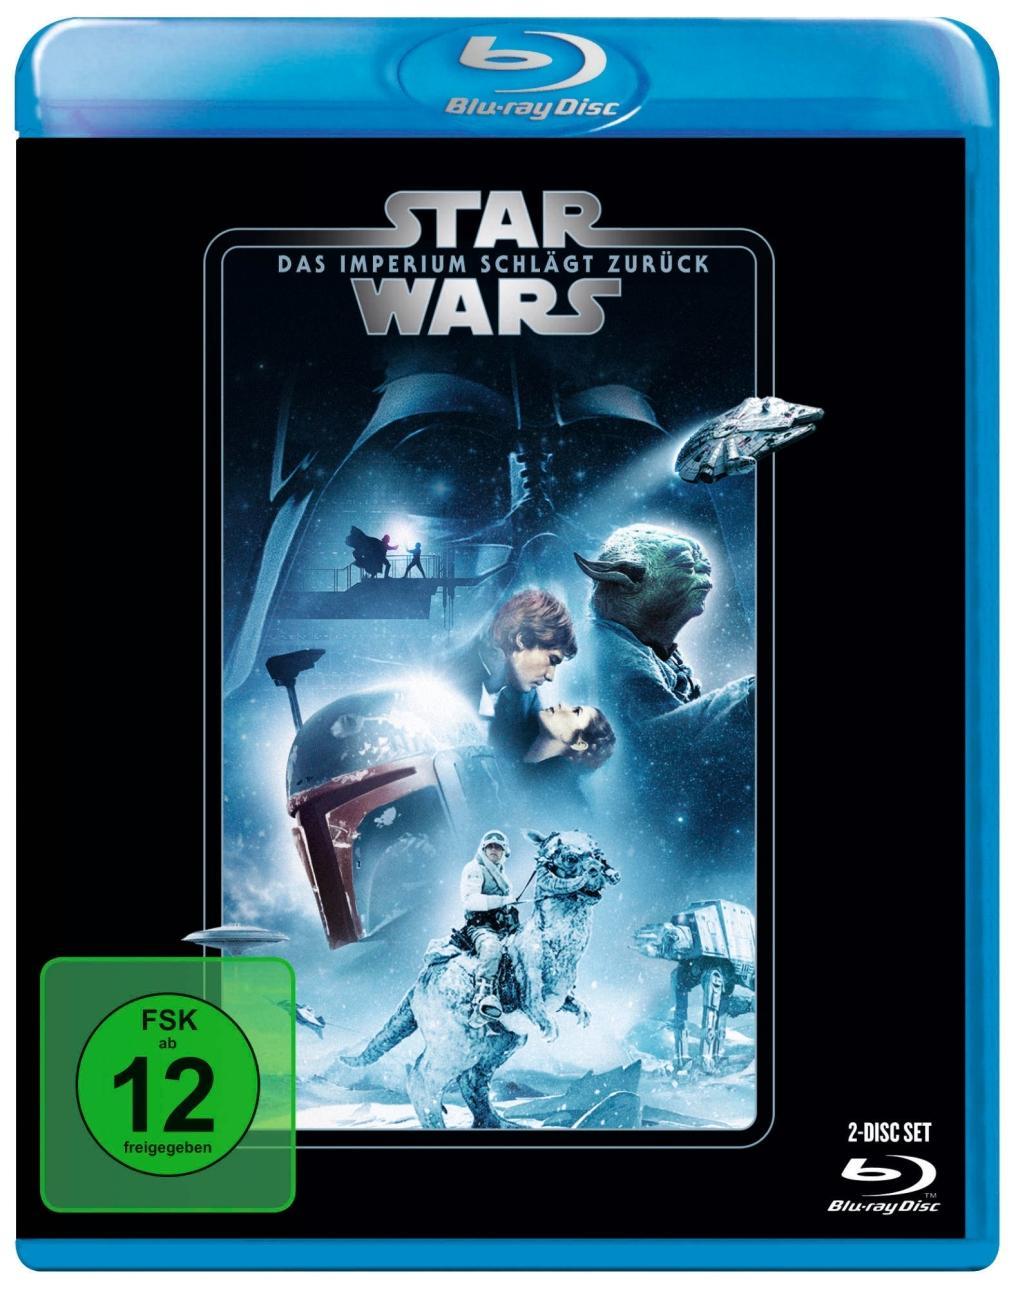 Videoclip Star Wars Episode 5, Das Imperium schlägt zurück, 1 Blu-ray, 1 Blu Ray Disc Irvin Kershner